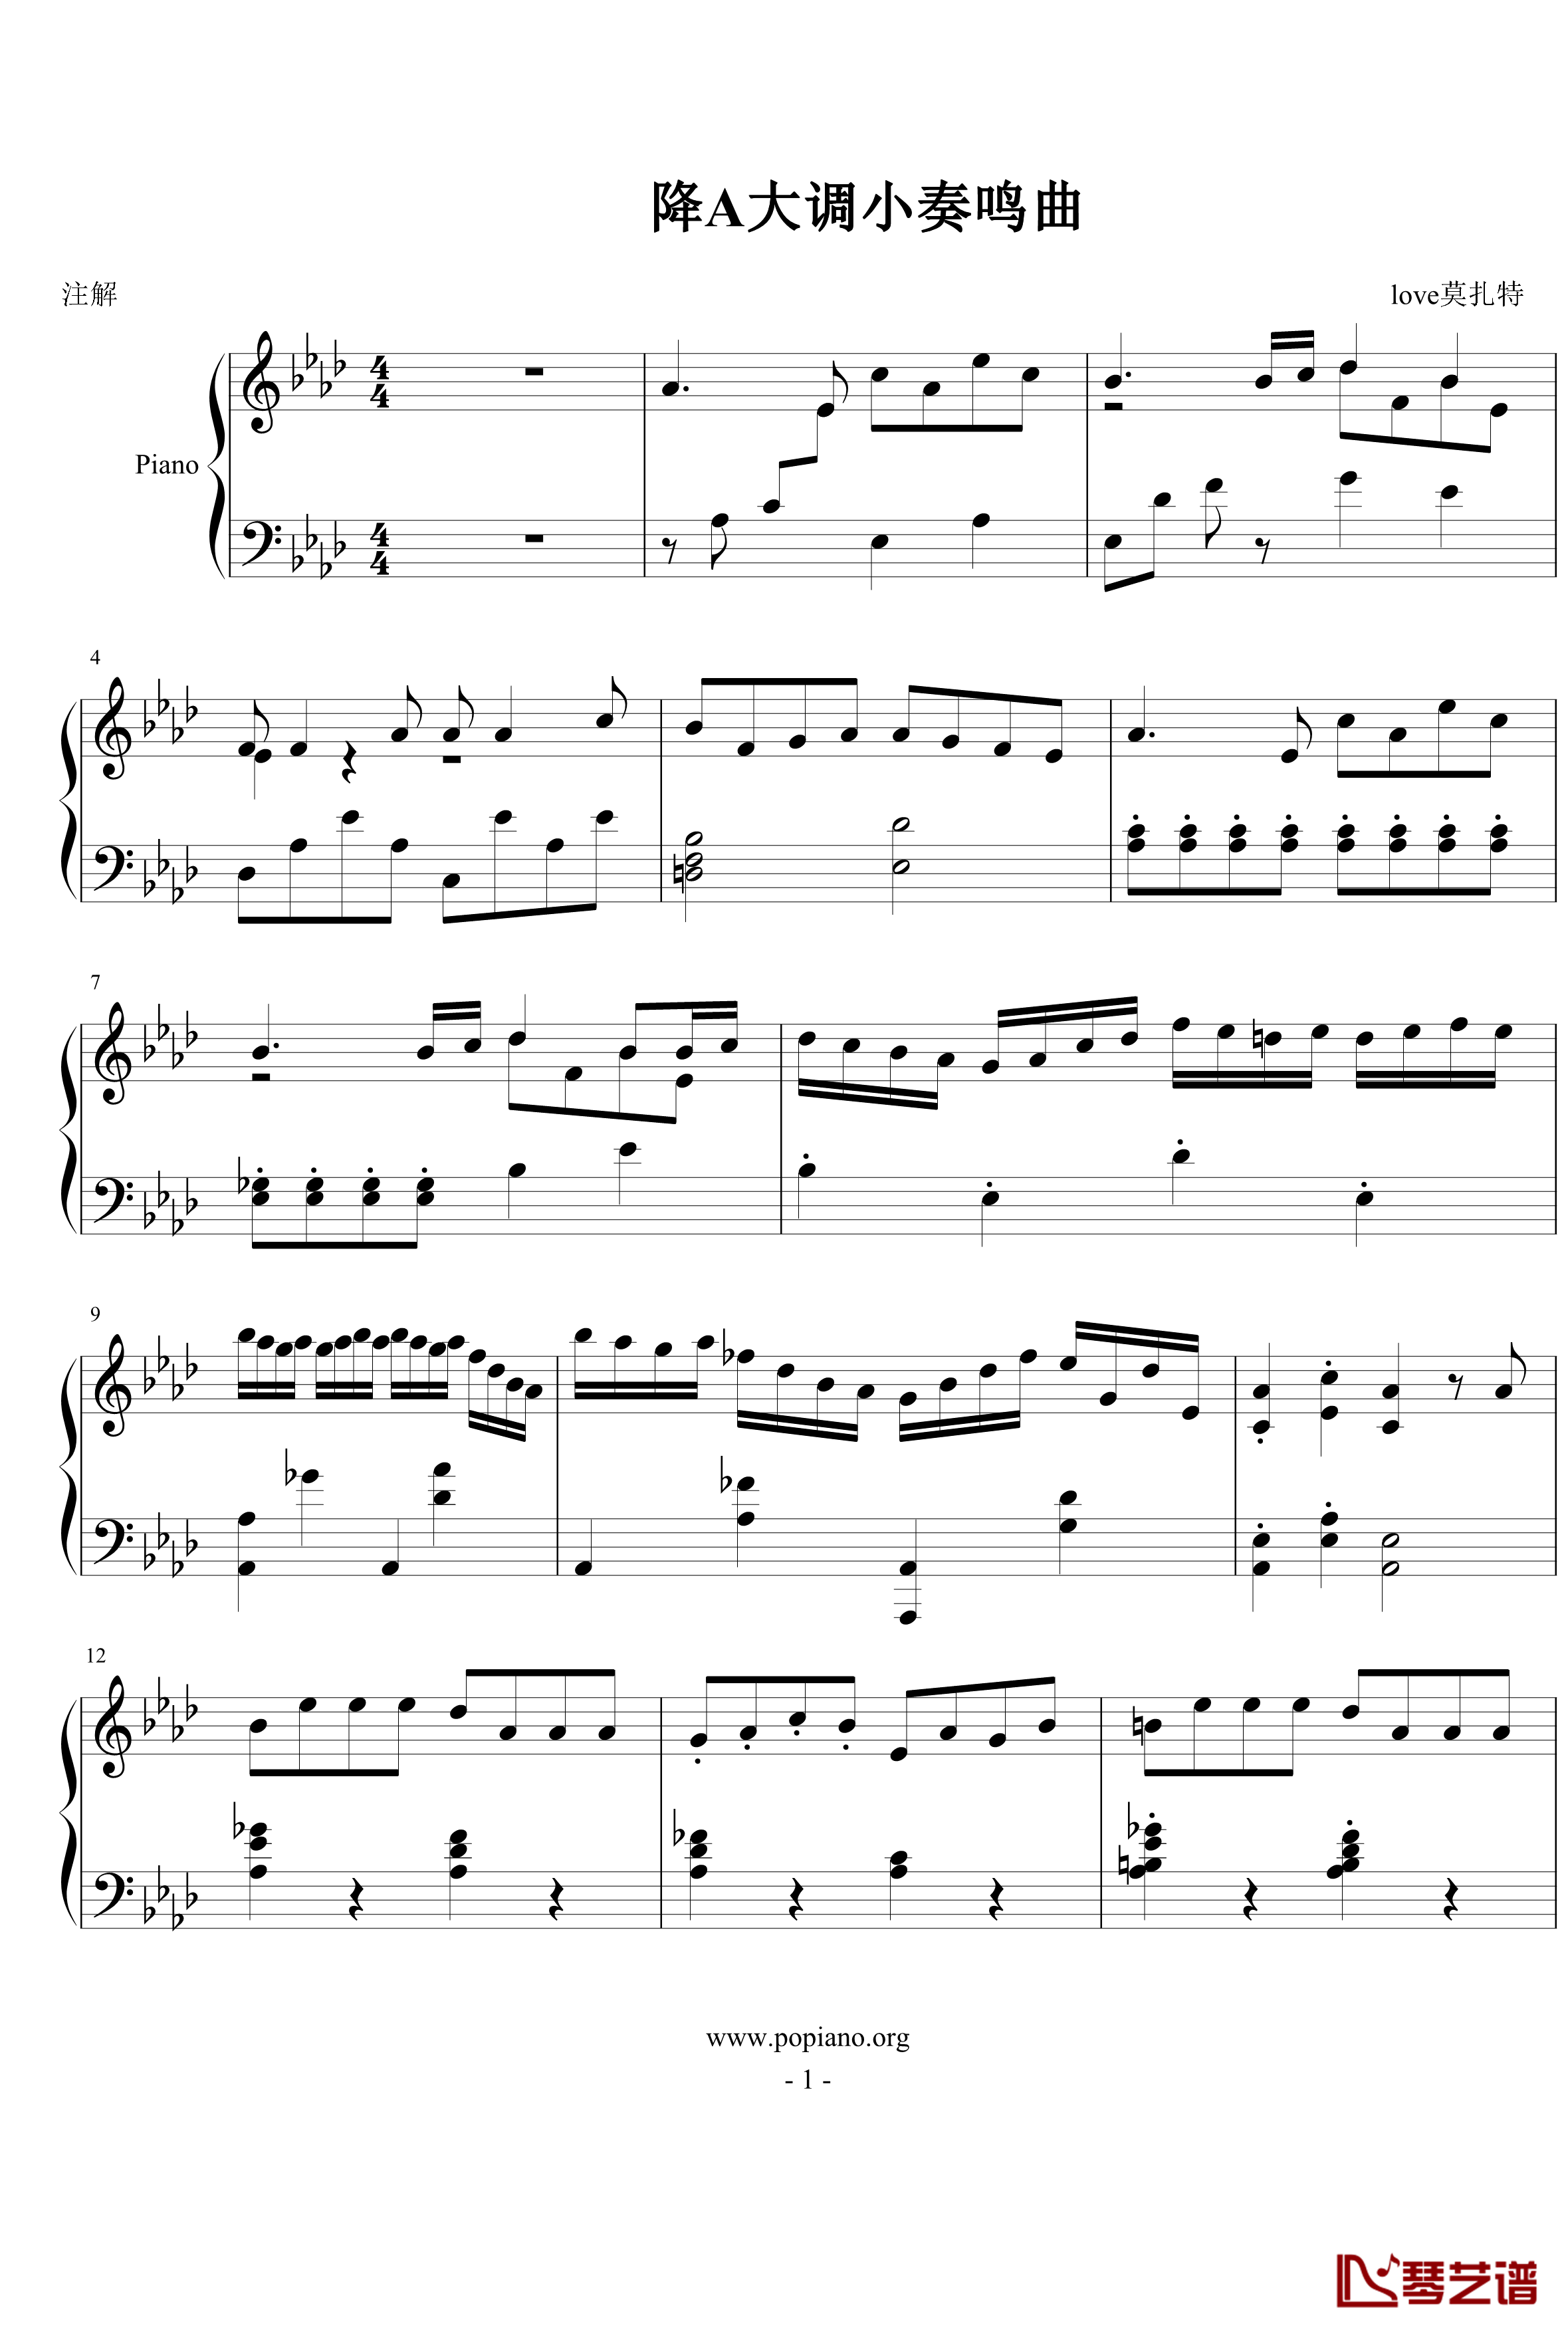 降a大调小奏鸣曲钢琴谱-love莫扎特1